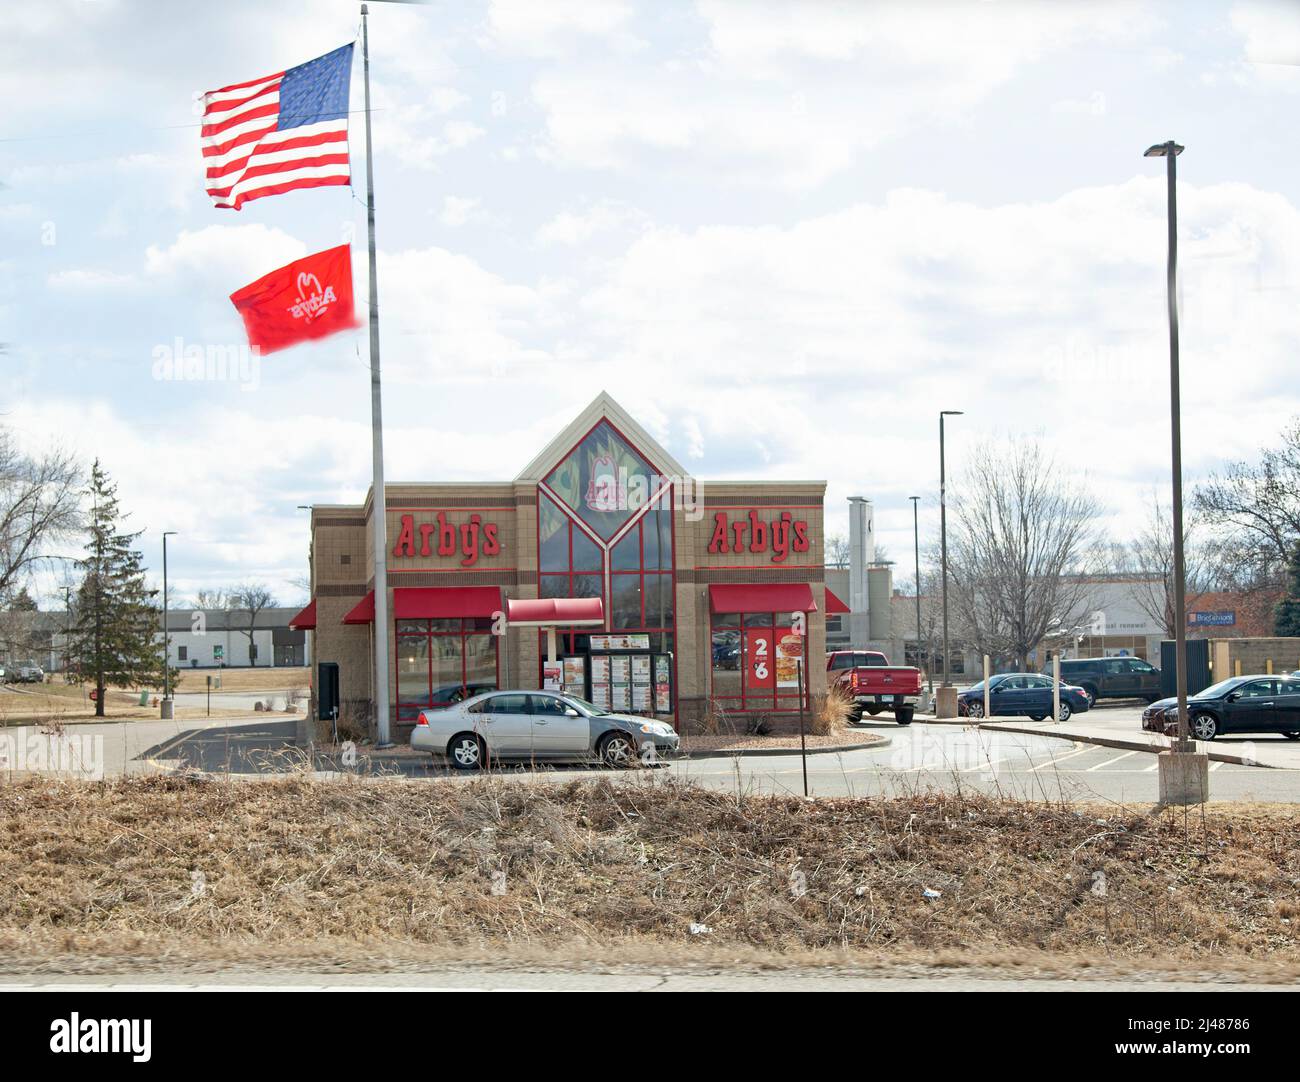 Le restaurant de restauration rapide Arby est un drapeau américain. Plymouth Minnesota MN États-Unis Banque D'Images